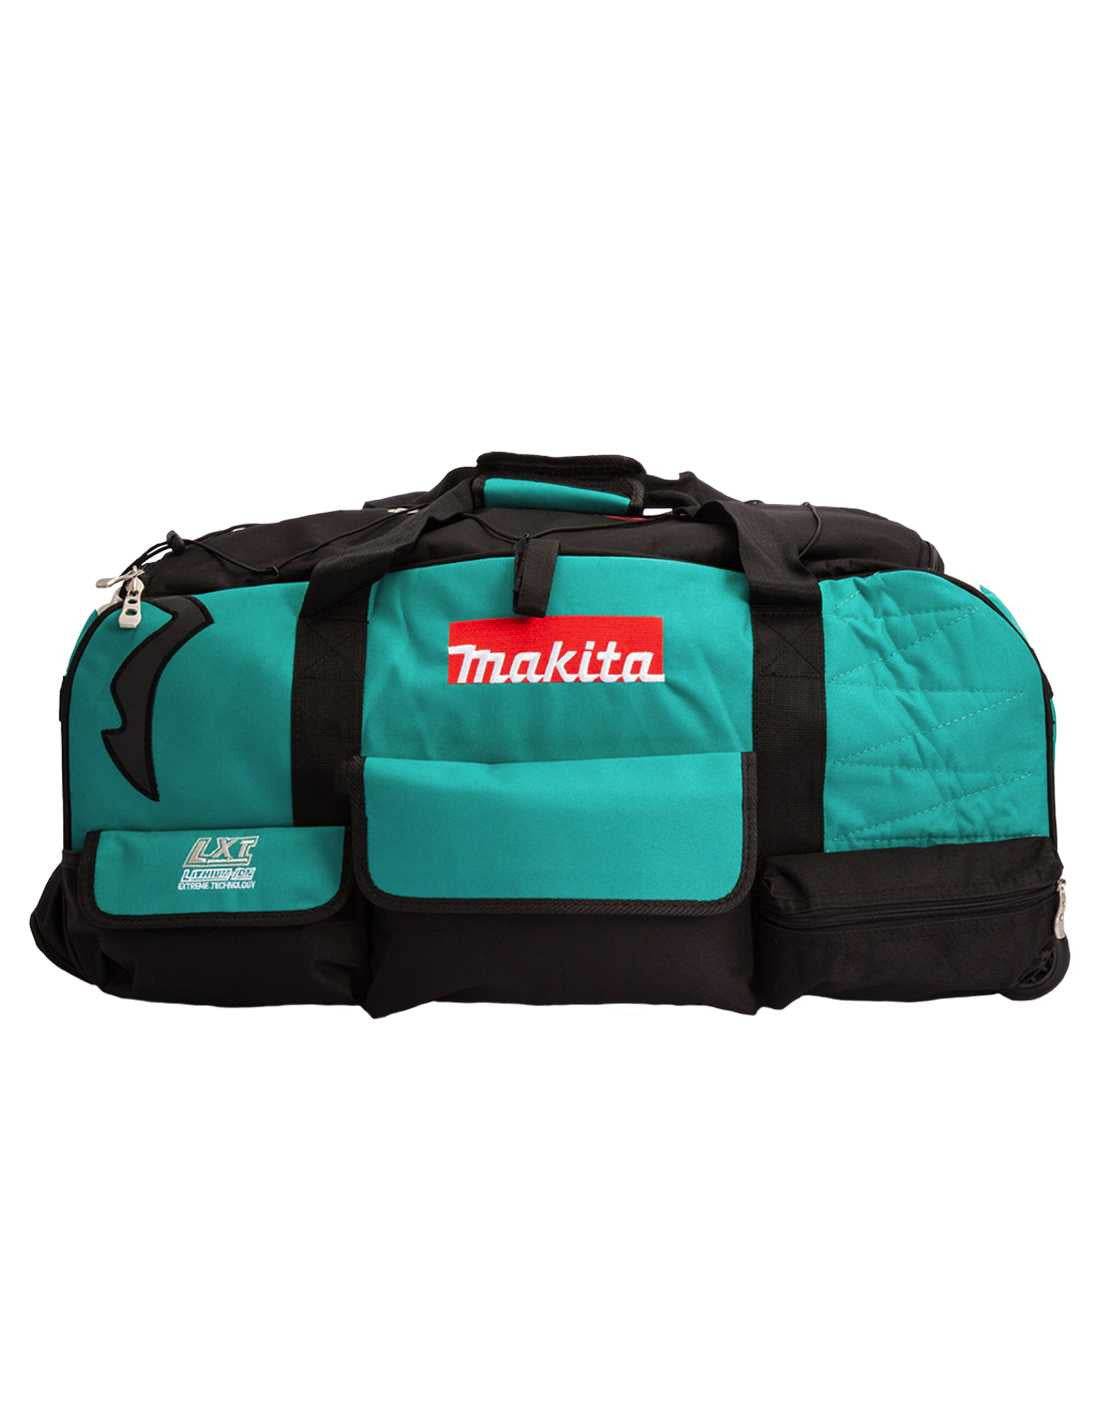 Kit Makita con 10 herramientas + 3 bateria 3ah + cargador + 2 bolsas DLX1080BL3